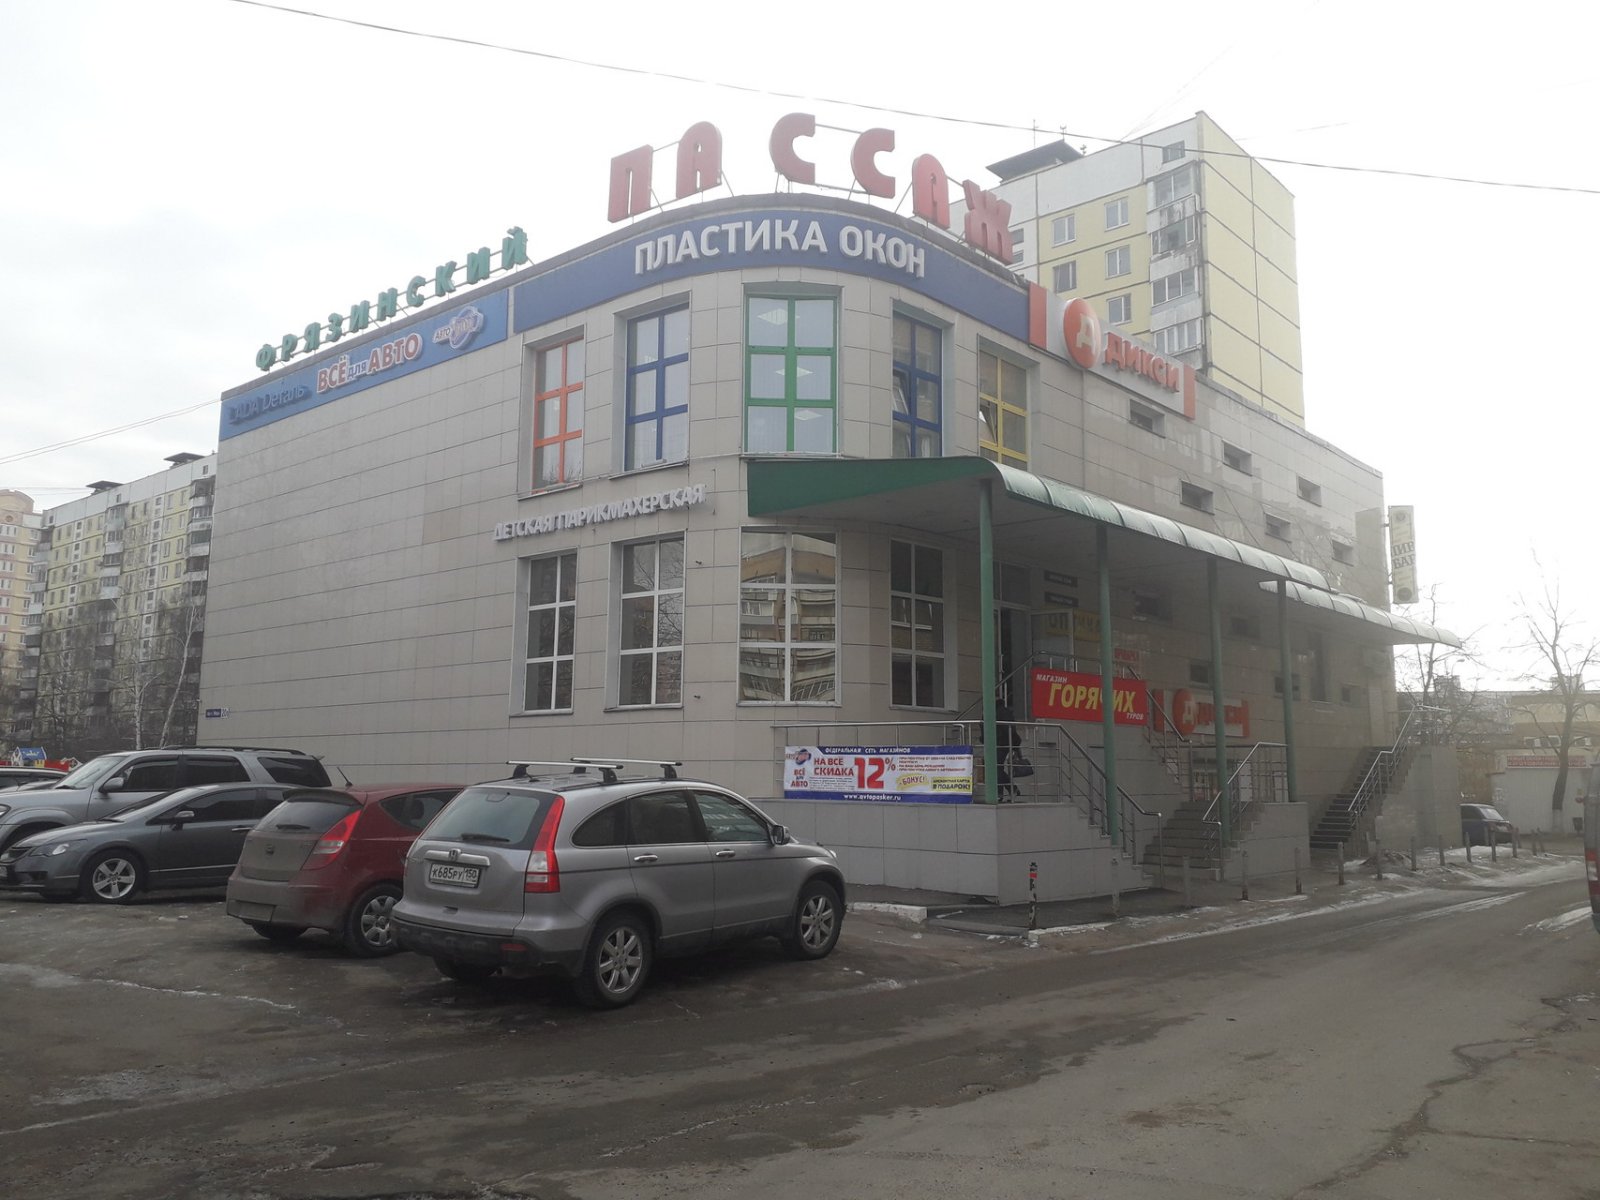 АвтоПаскер, магазин автотоваров и запчастей, проспект Мира, 20в, 1 этаж